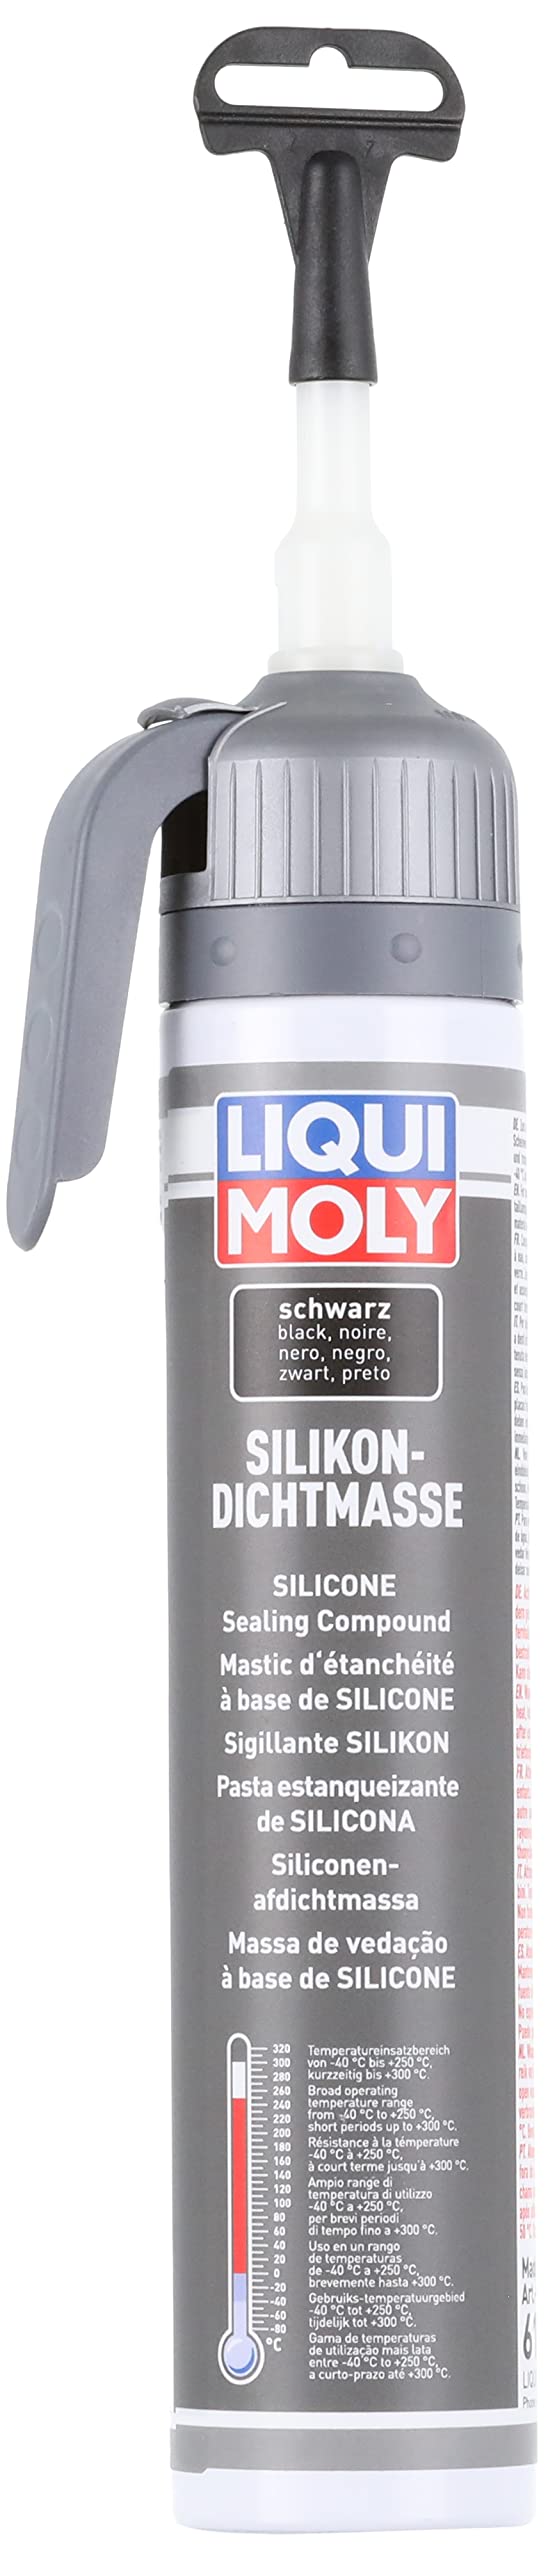 LIQUI MOLY Silikondichtmasse schwarz | 200 ml | Karosserieschutz | Dichtstoff | Unterbodenschutz | Art.-Nr.: 6185 von Liqui Moly